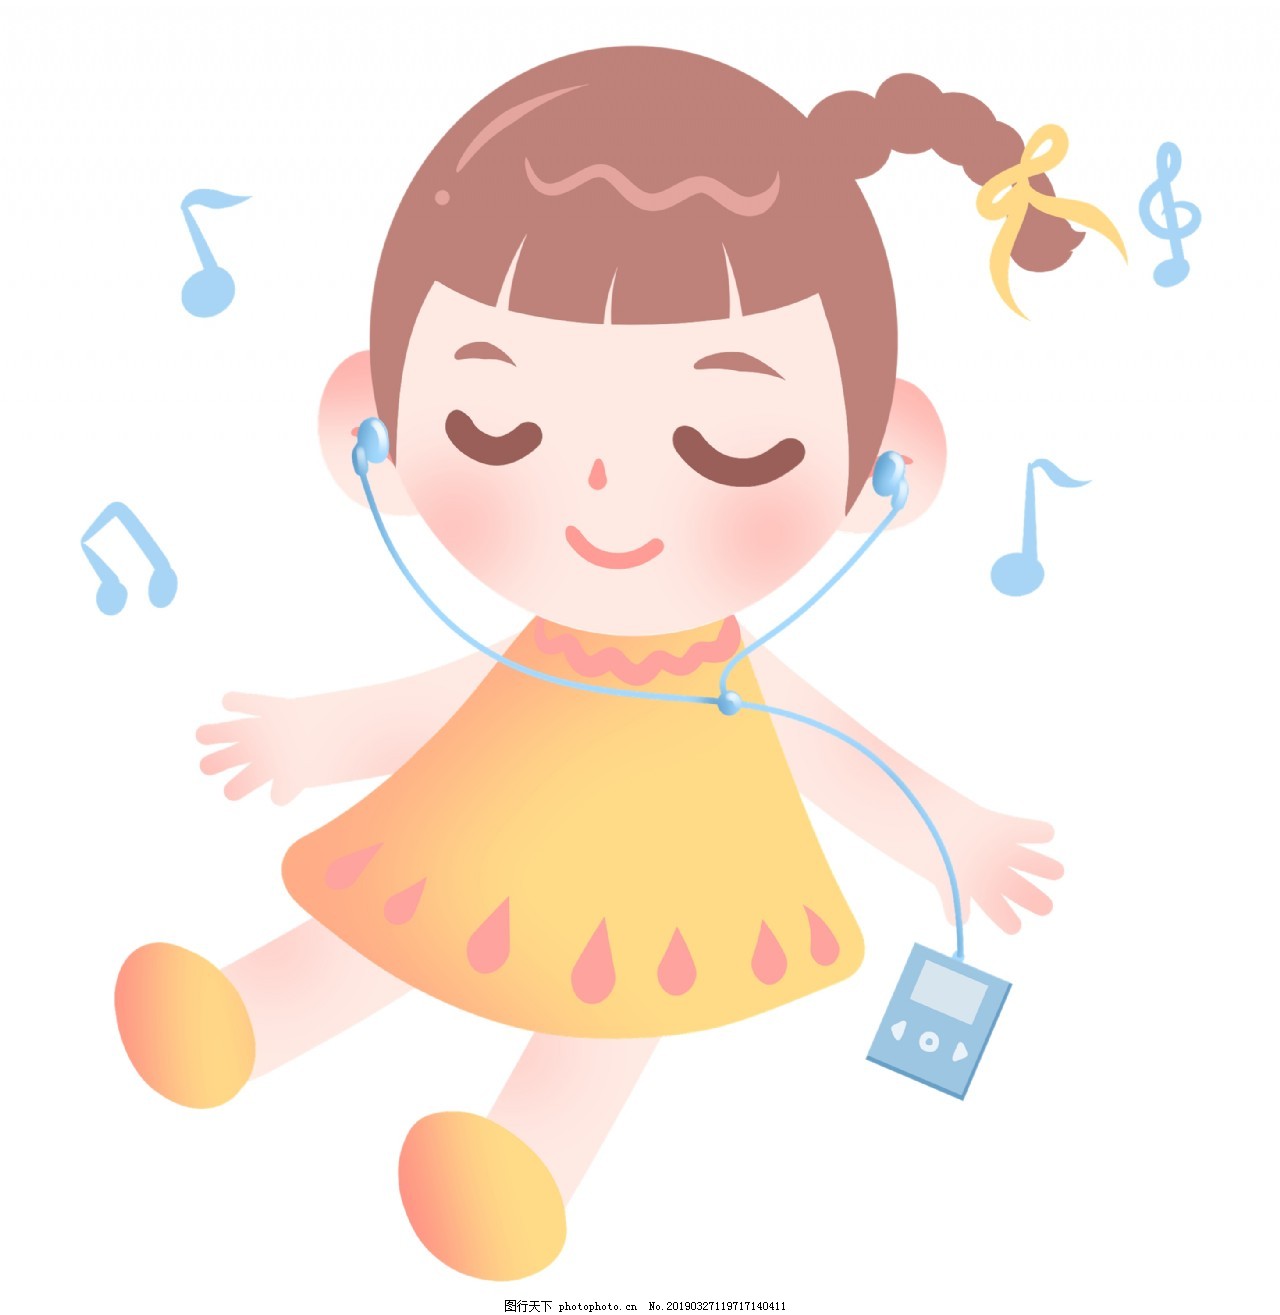 戴耳機聽音樂的女孩圖片素材-JPG圖片尺寸6720 × 4480px-高清圖案501026885-zh.lovepik.com